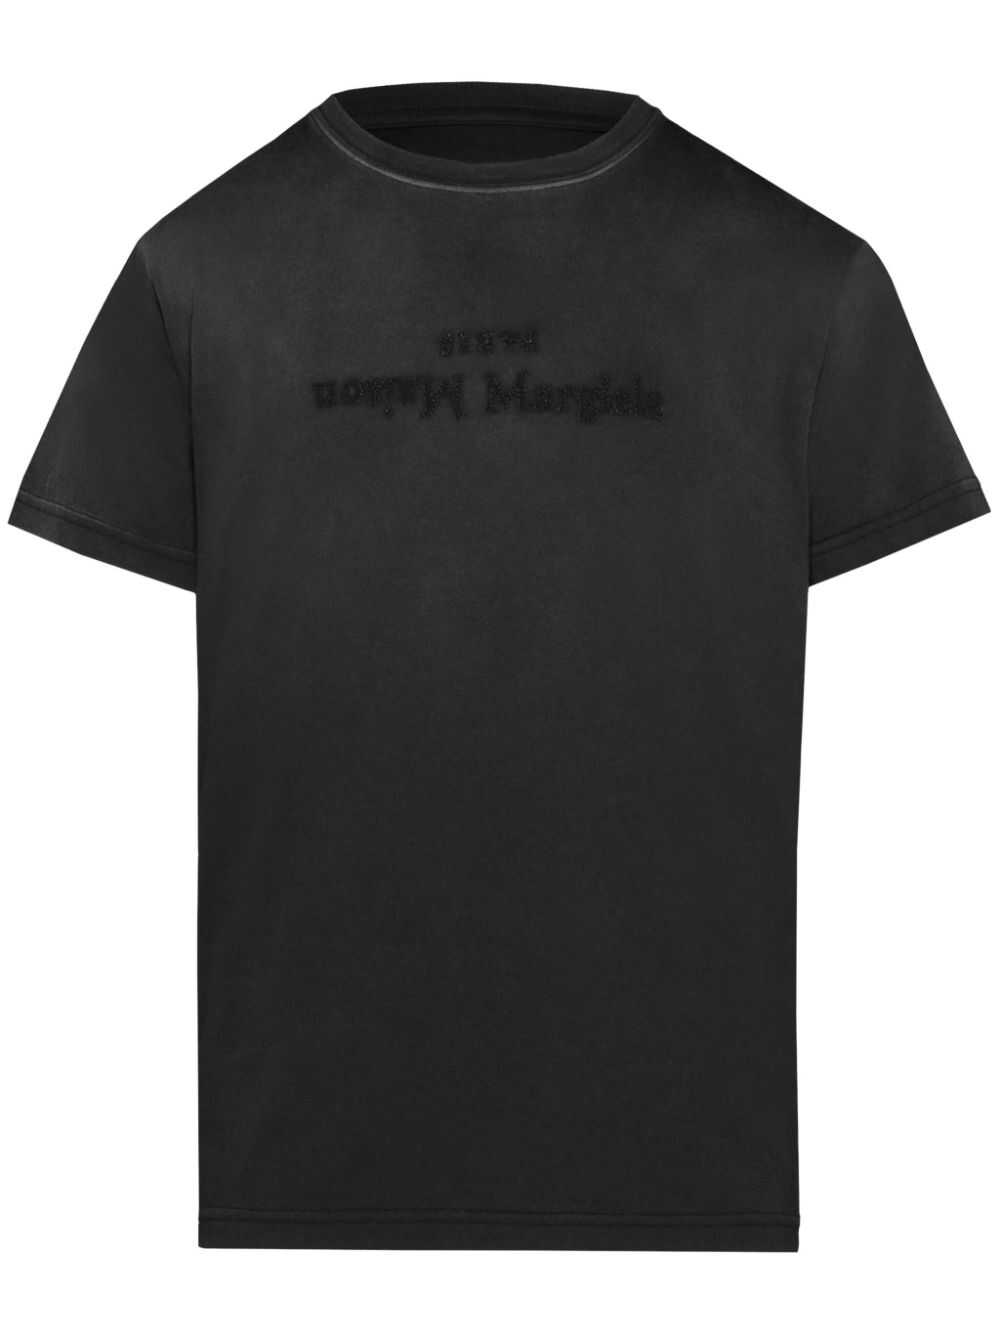 Maison Margiela Maison Margiela T-shirts And Polos Black Black